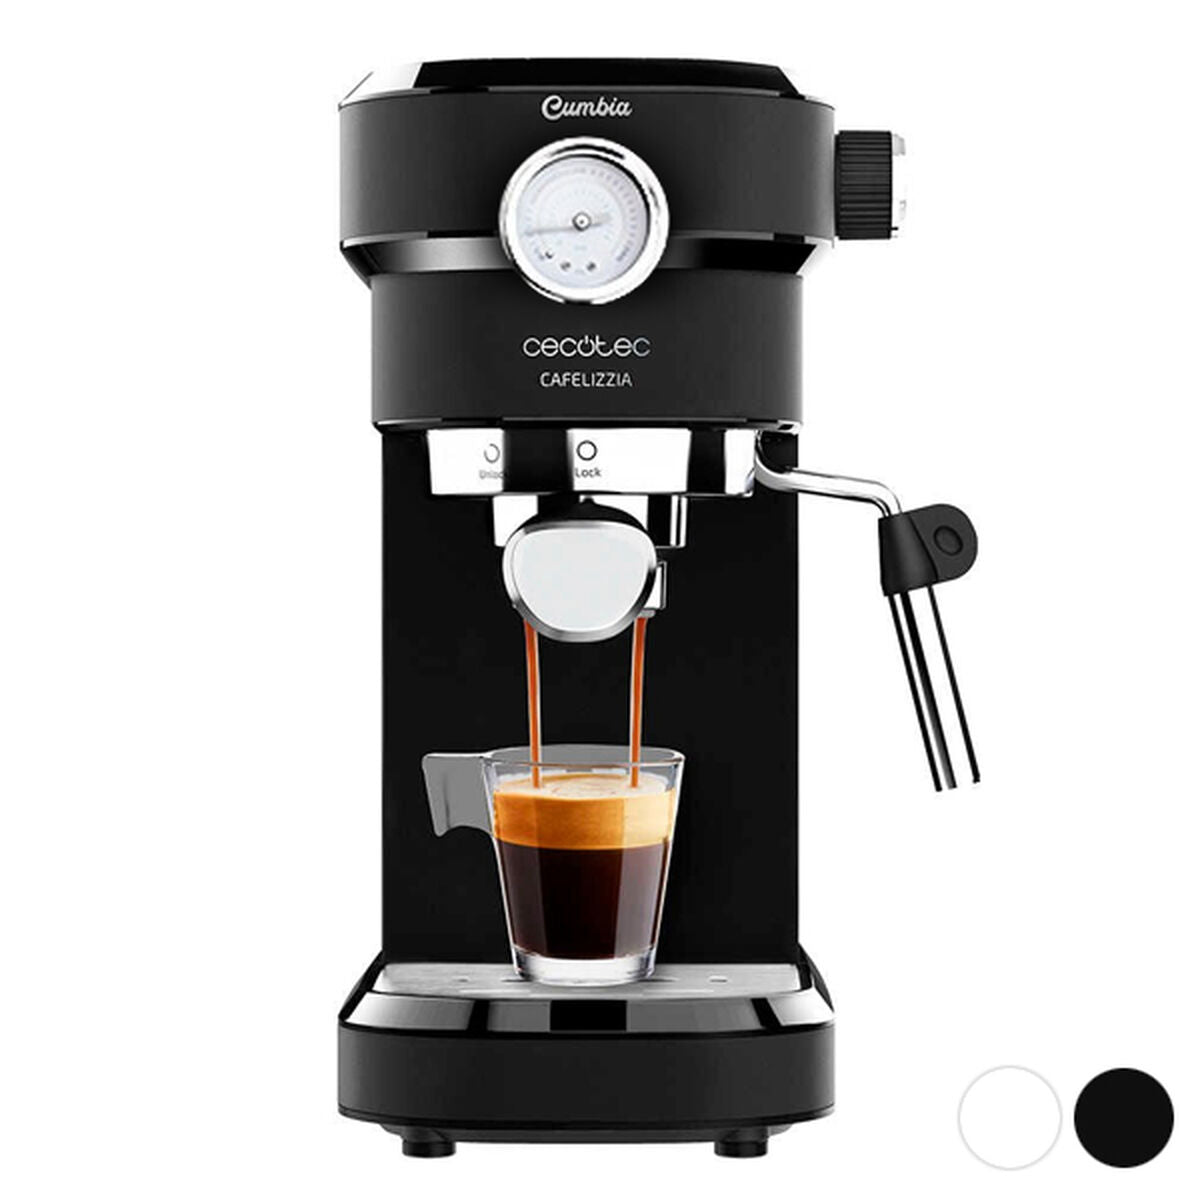 Express-Kaffeearm Cecotec CAFELIZZIA 1,2 l 20 bar 1350 W schwarzer Stahl 